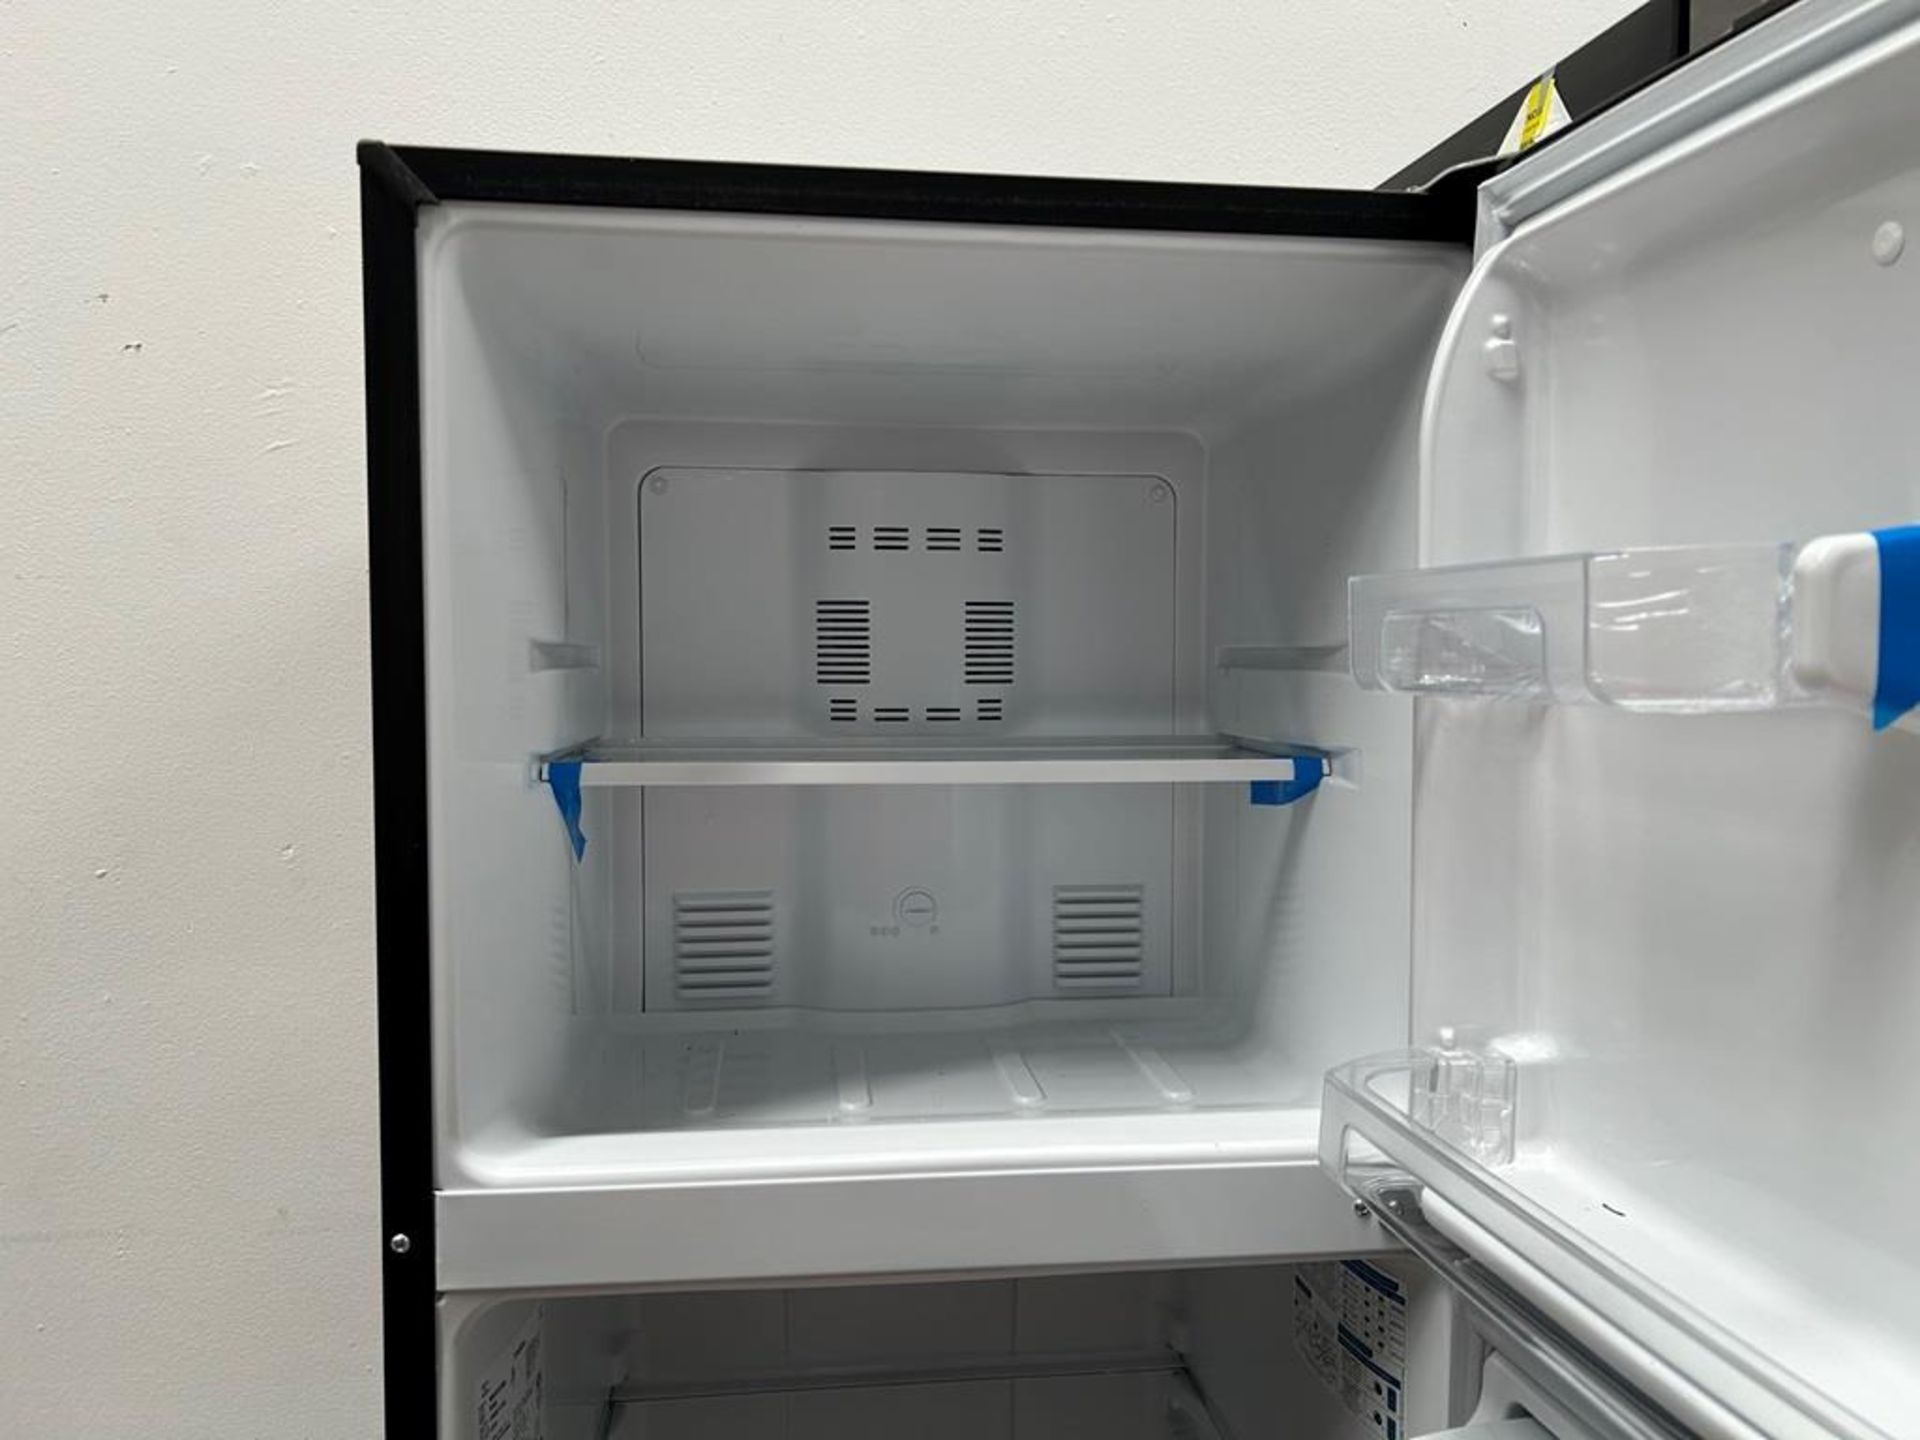 Lote de 2 refrigeradores contiene:1 refrigerador Marca MABE, Modelo RMS400IVMRMA, Serie 03009, Colo - Image 12 of 18